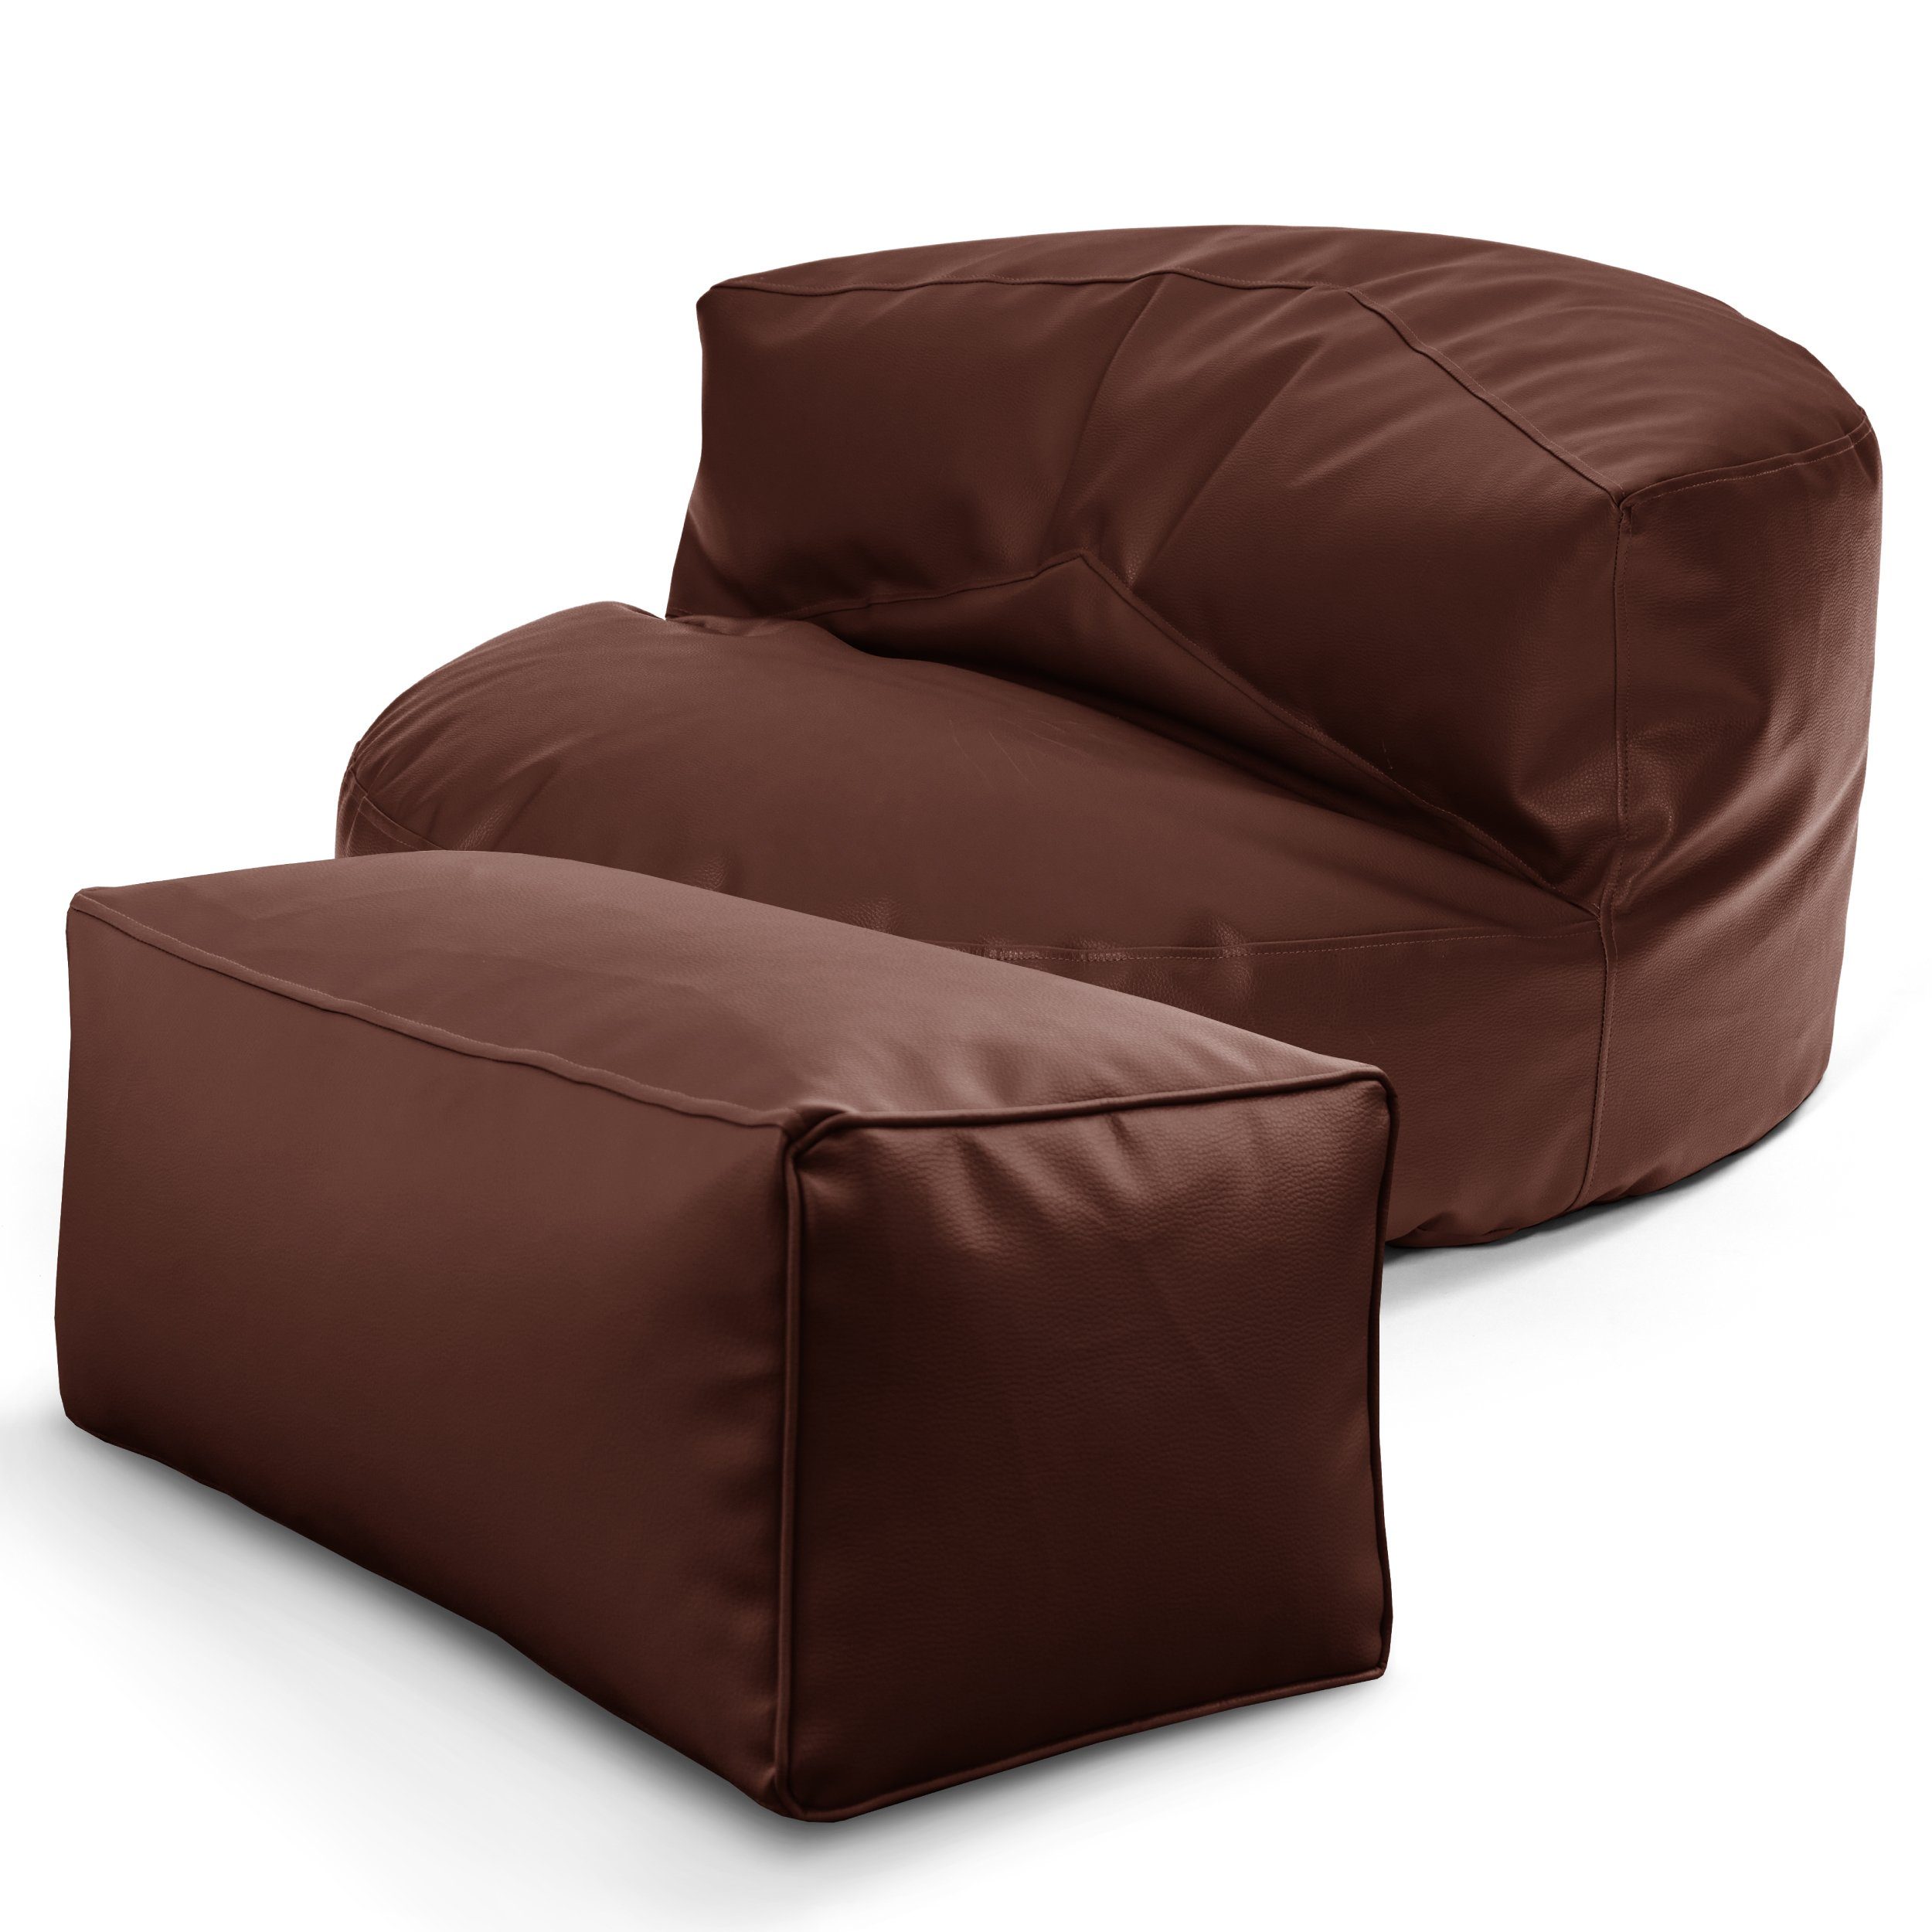 Green Bean Sitzsack Sofa + Pouf Sitzsack als Set aus Kunstleder, EPS Perlen Füllung ca. 90x45cm - Couch XXL Riesensitzsack Lounge Ottomane Dunkelbraun